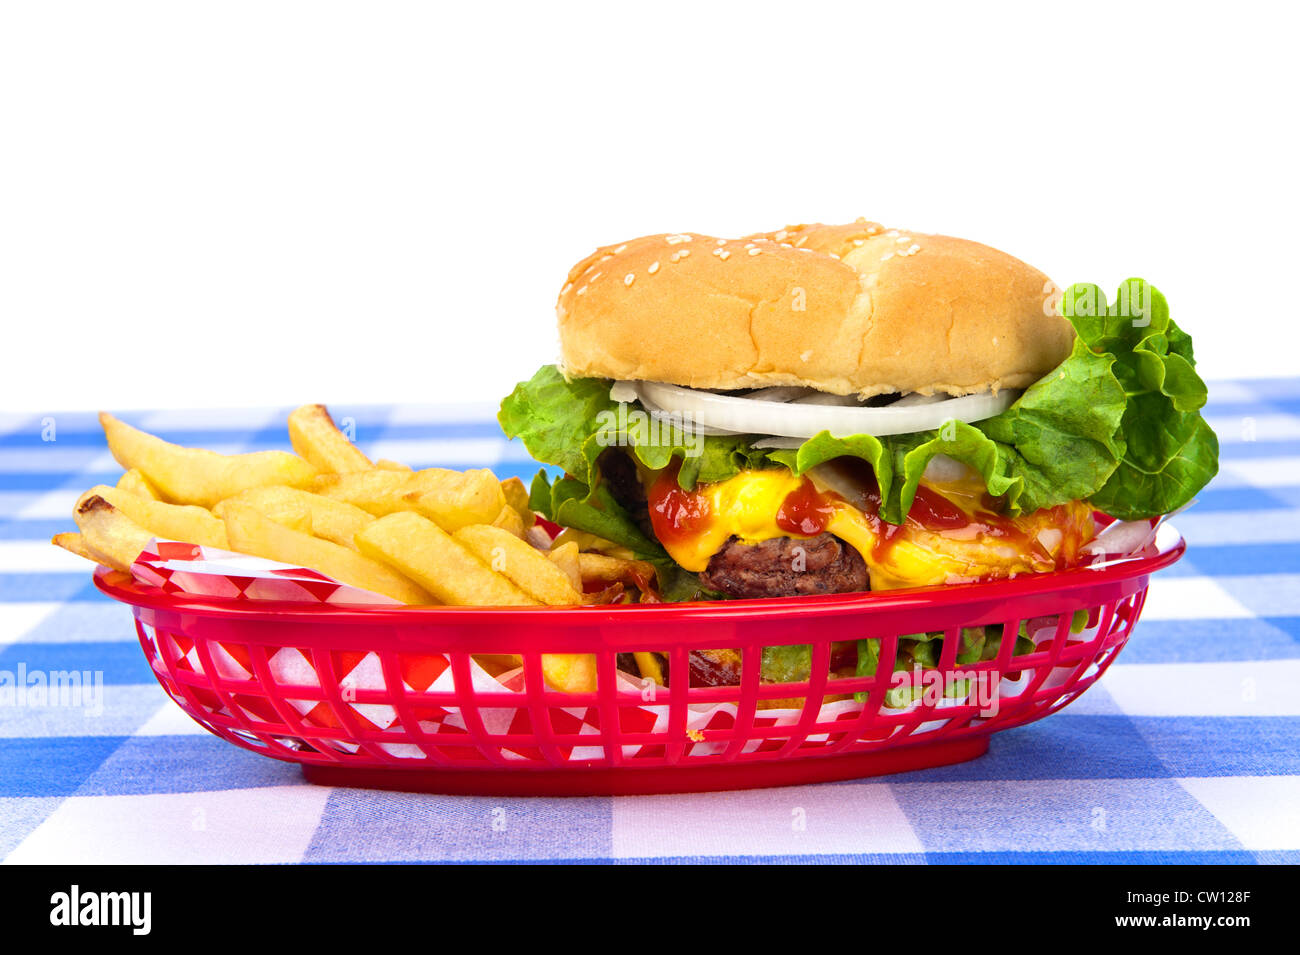 Eine frisch gegrillte Cheeseburger in einem roten Korb mit frisch zubereiteten Pommes Frites. Stockfoto